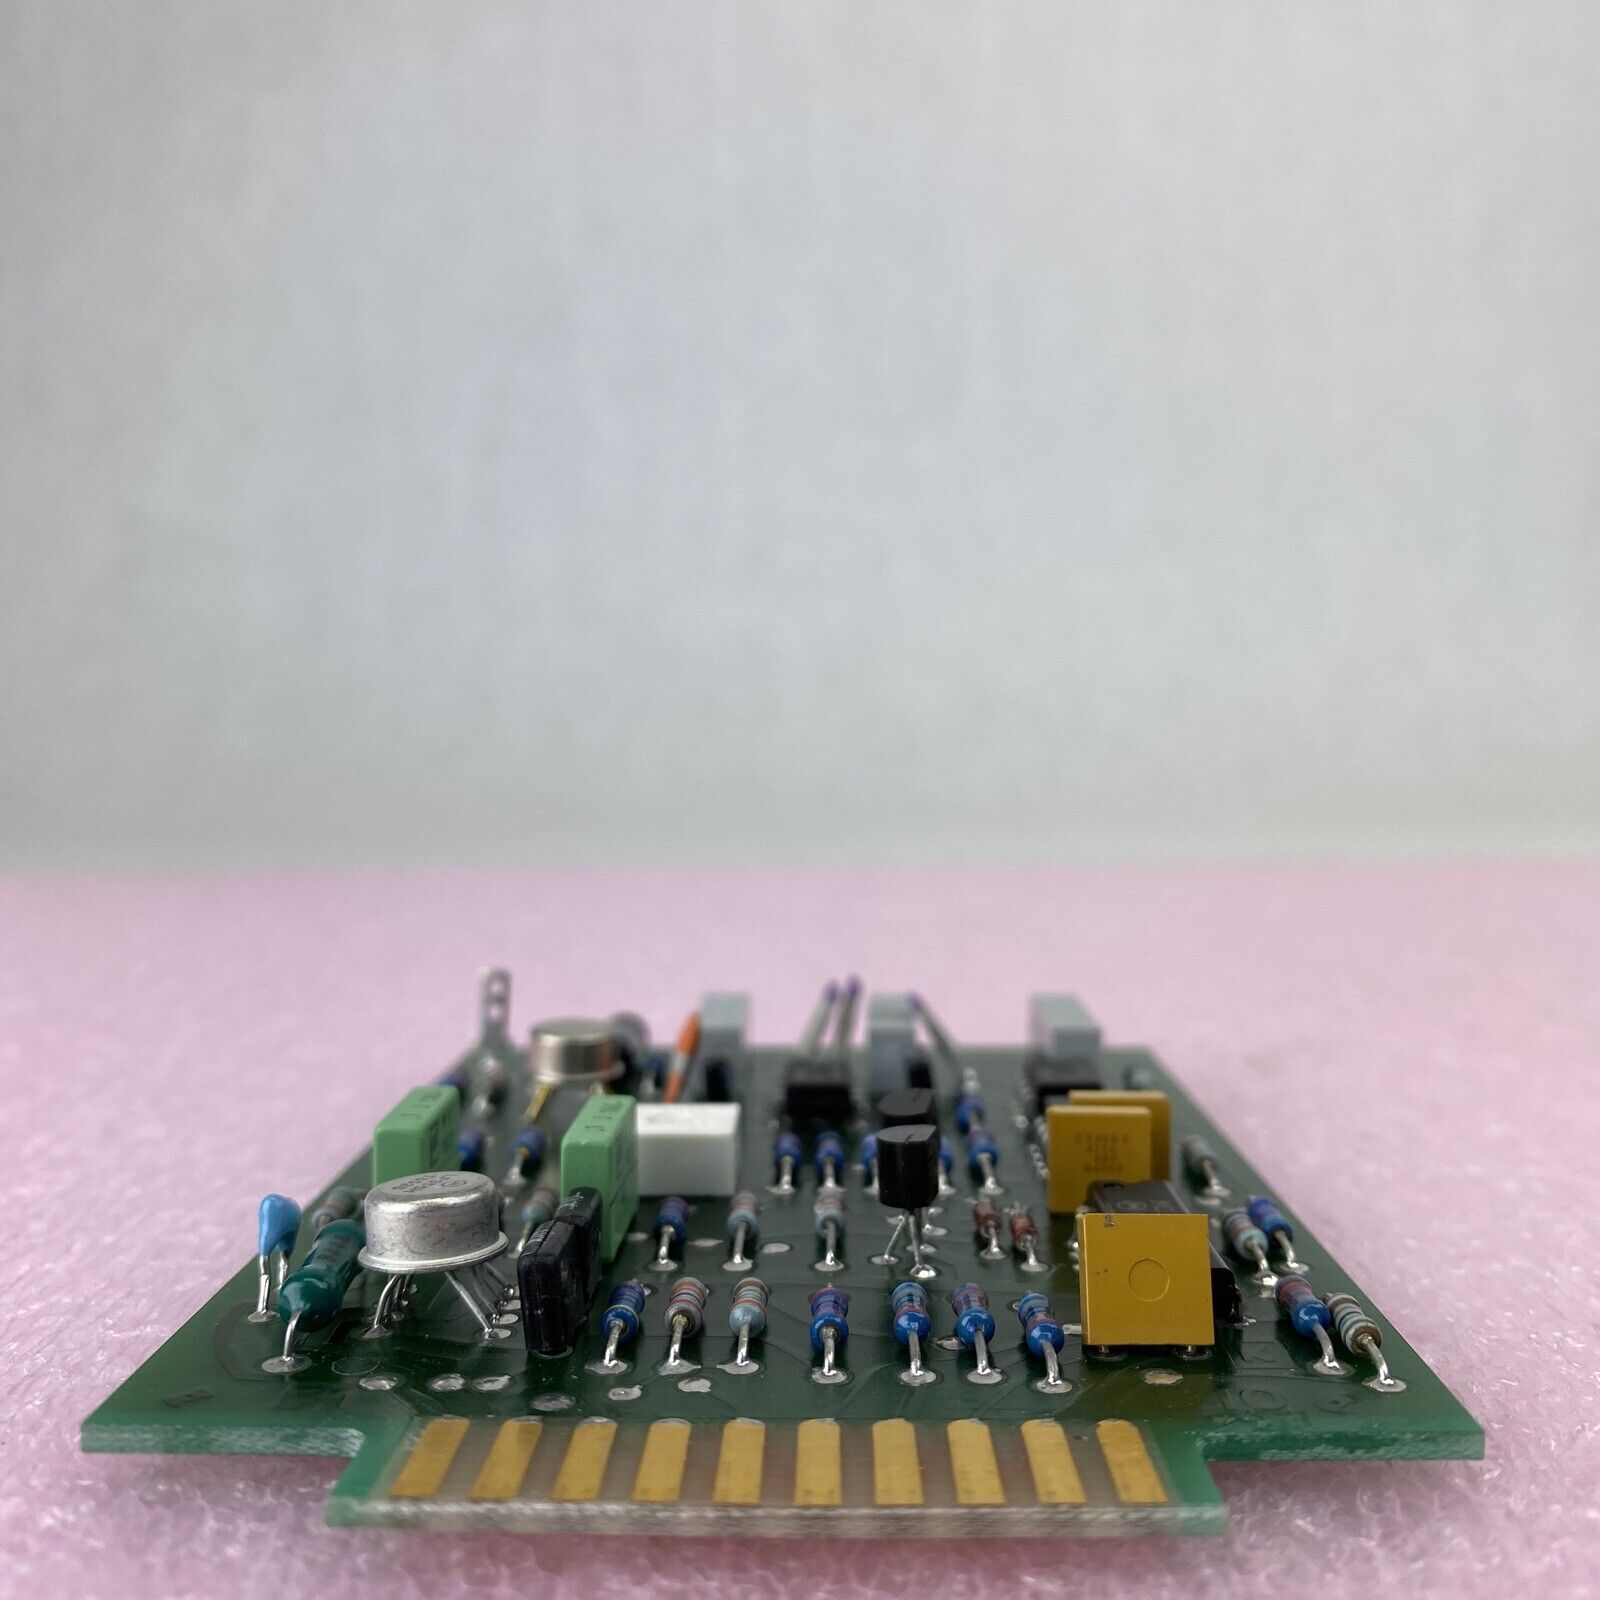 LKB 9001 2928 circuit board A2 PCB for Pharmacia 2238 Uvicord detector